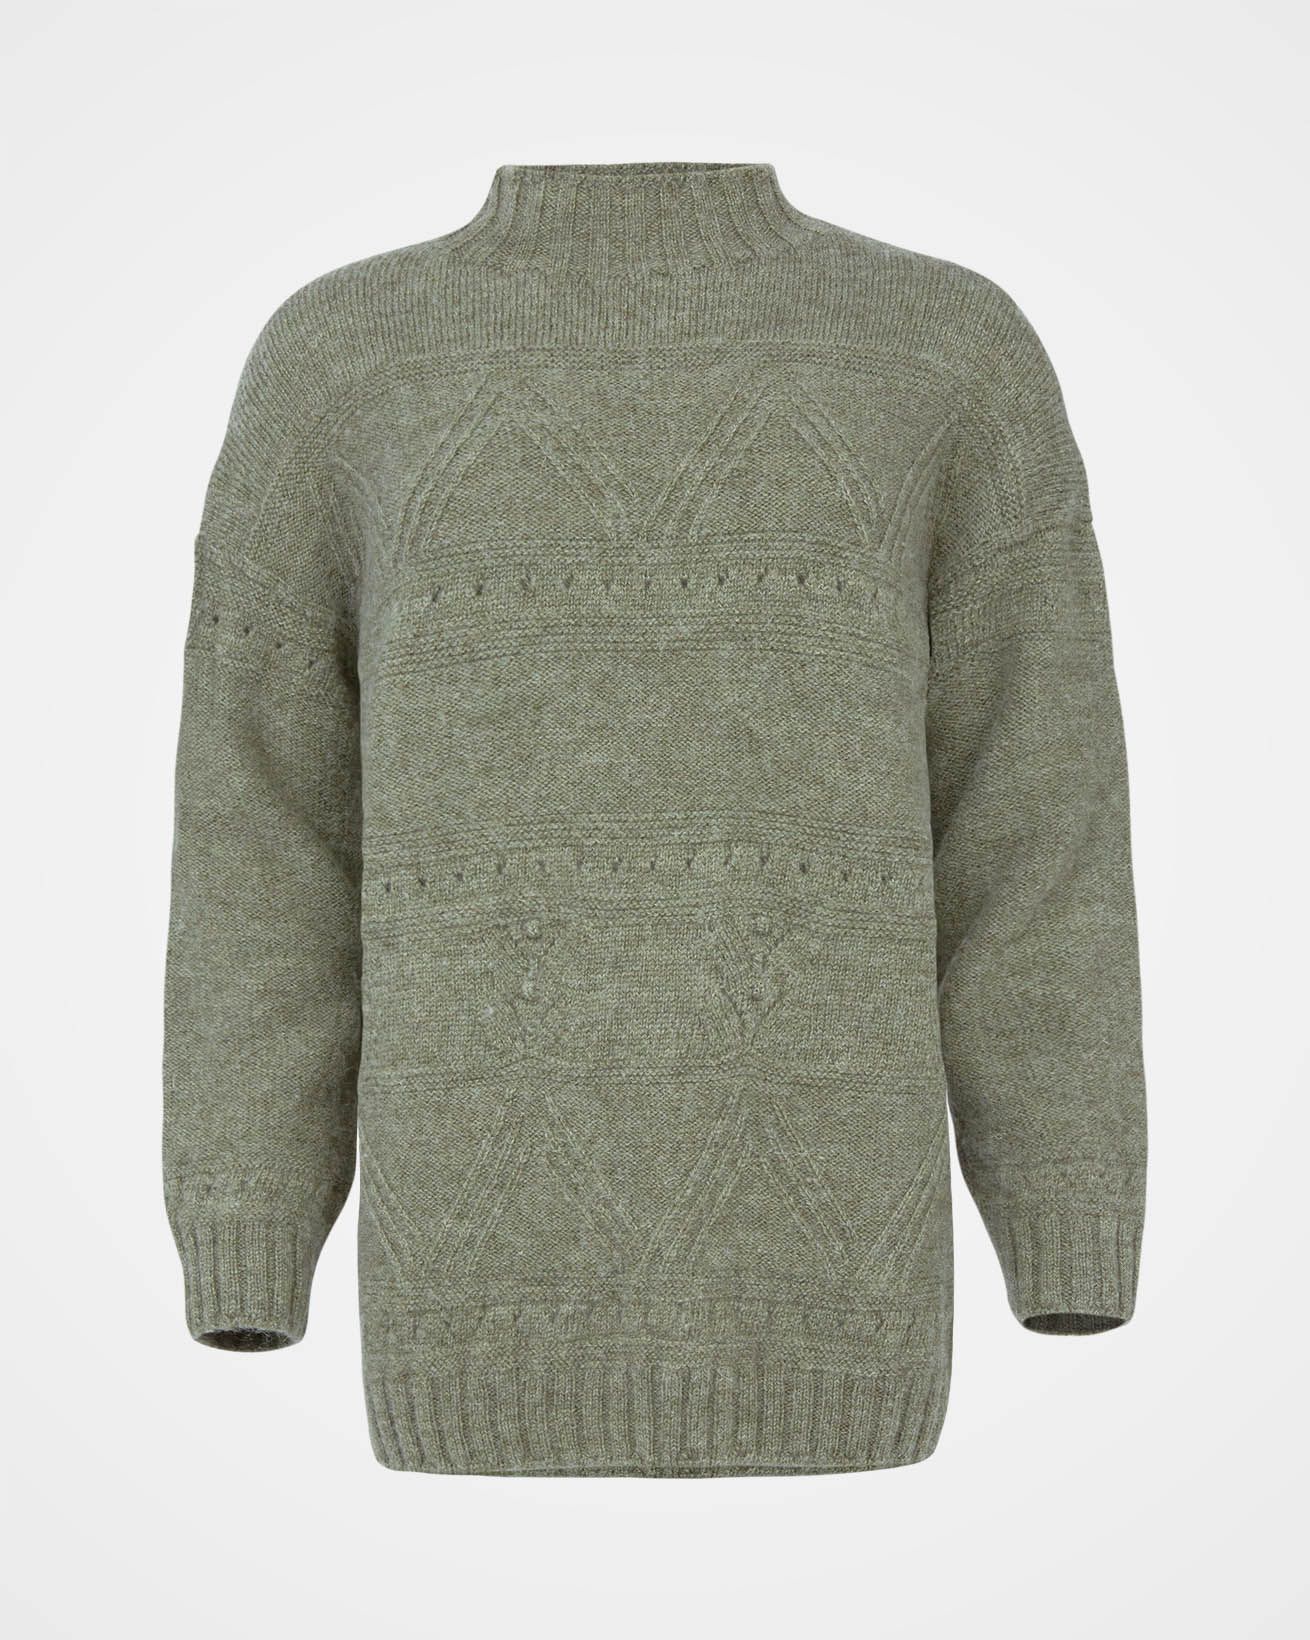 Shop Wool blend pointelle knit sweater dress